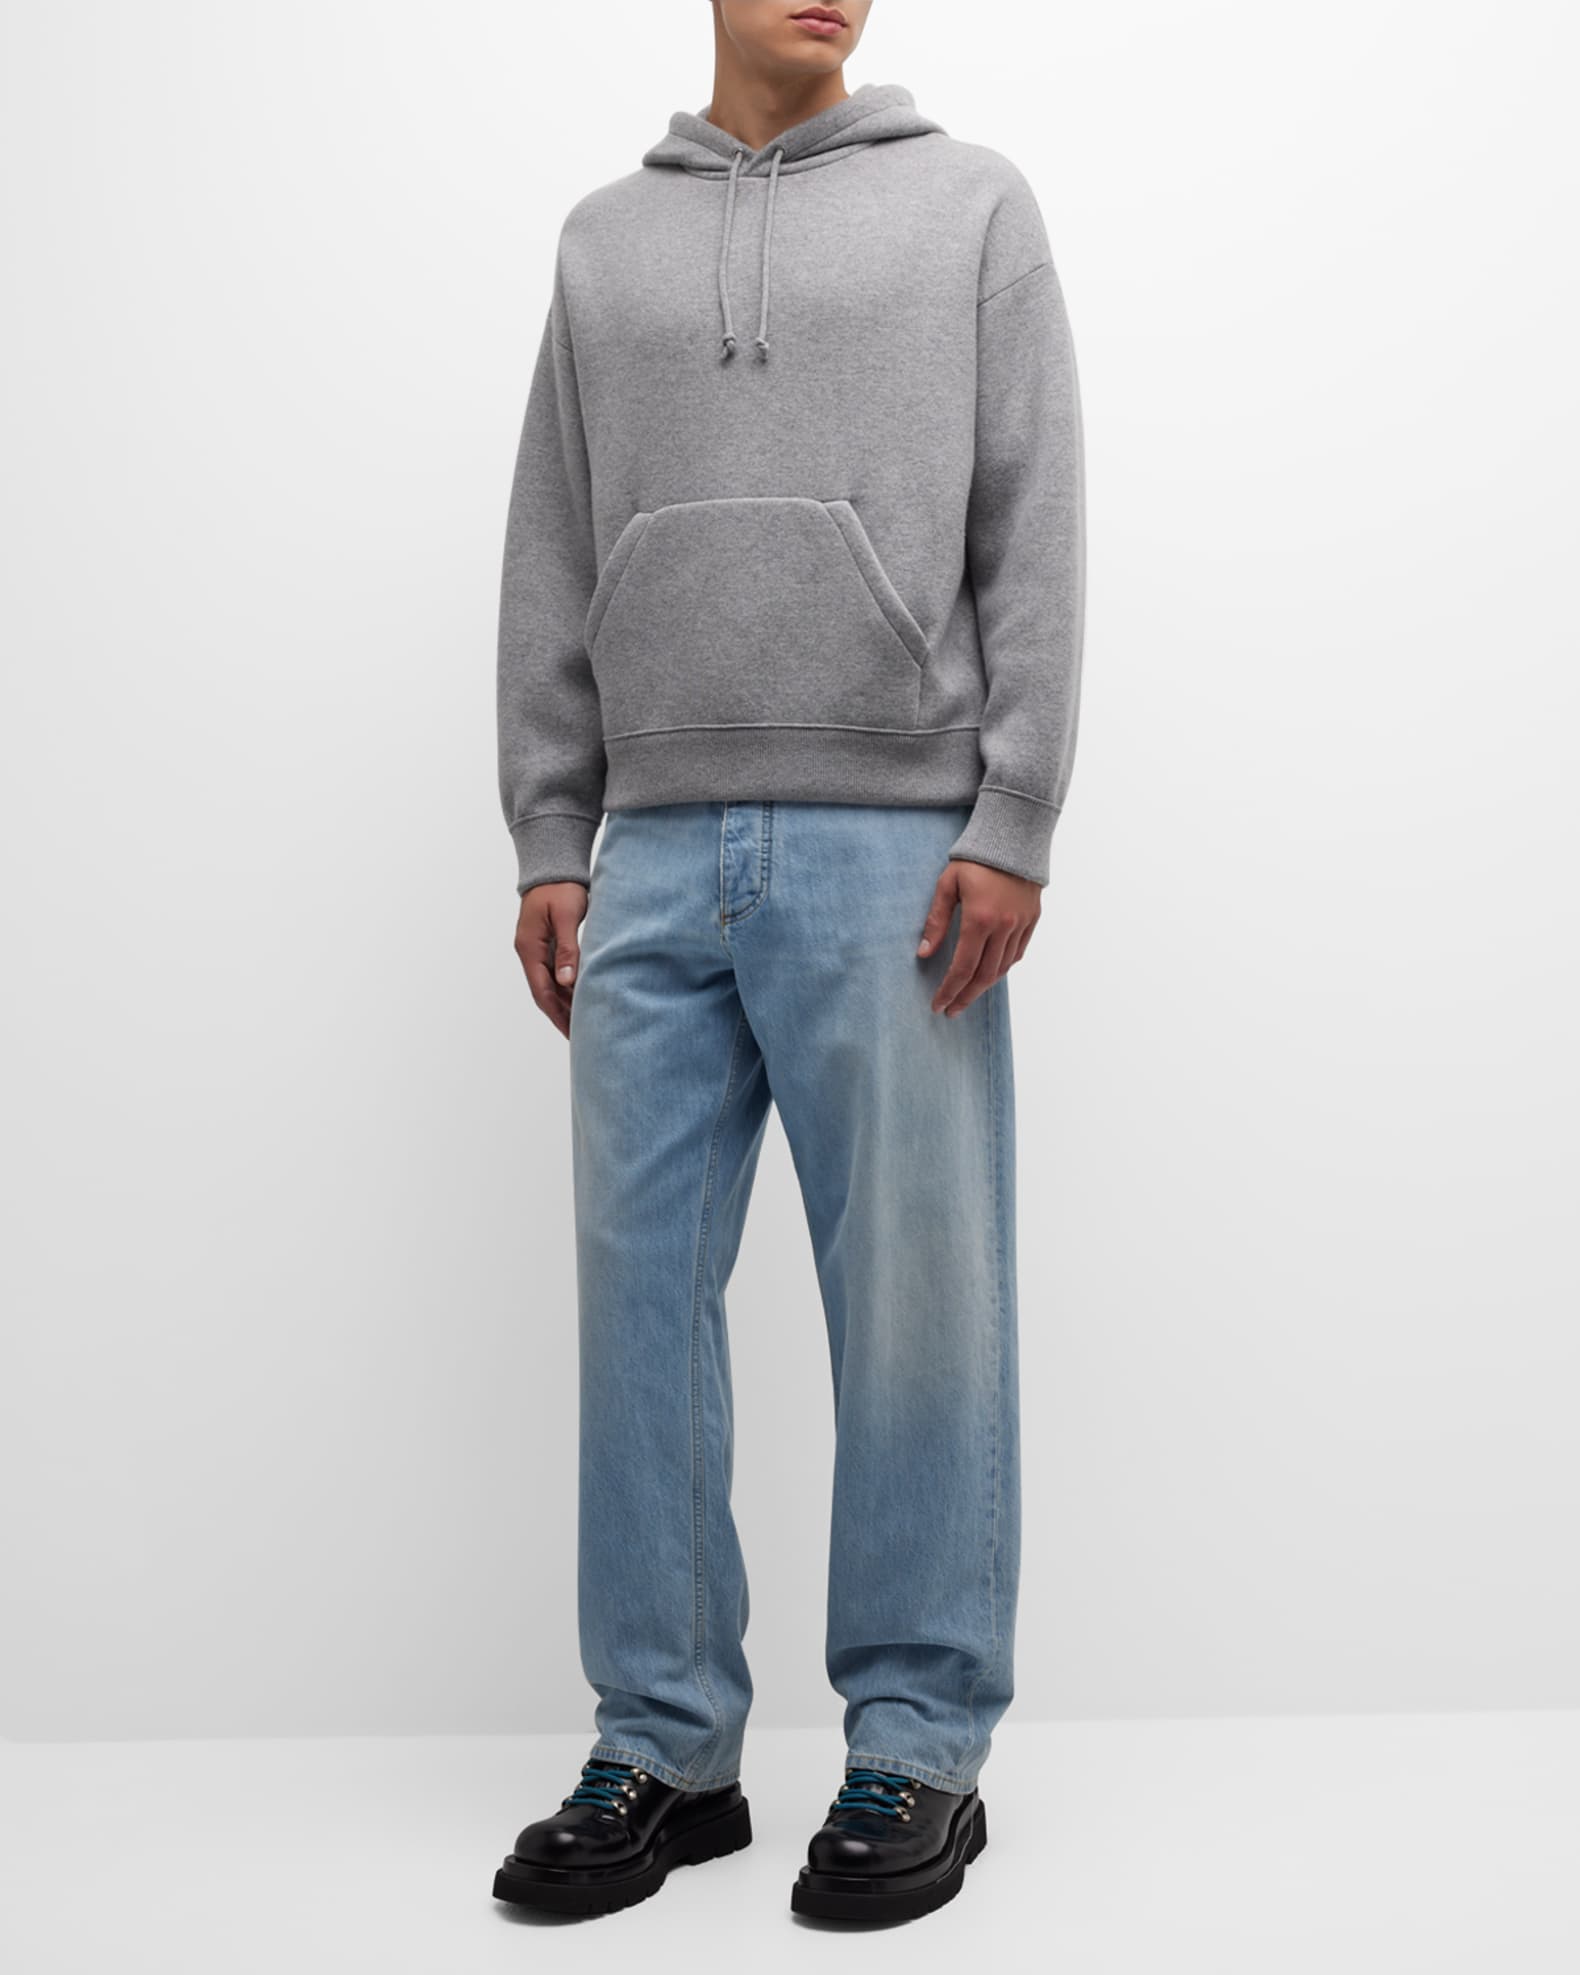 Bottega Veneta Men's Compact Cashmere Knit Hoodie | Neiman Marcus